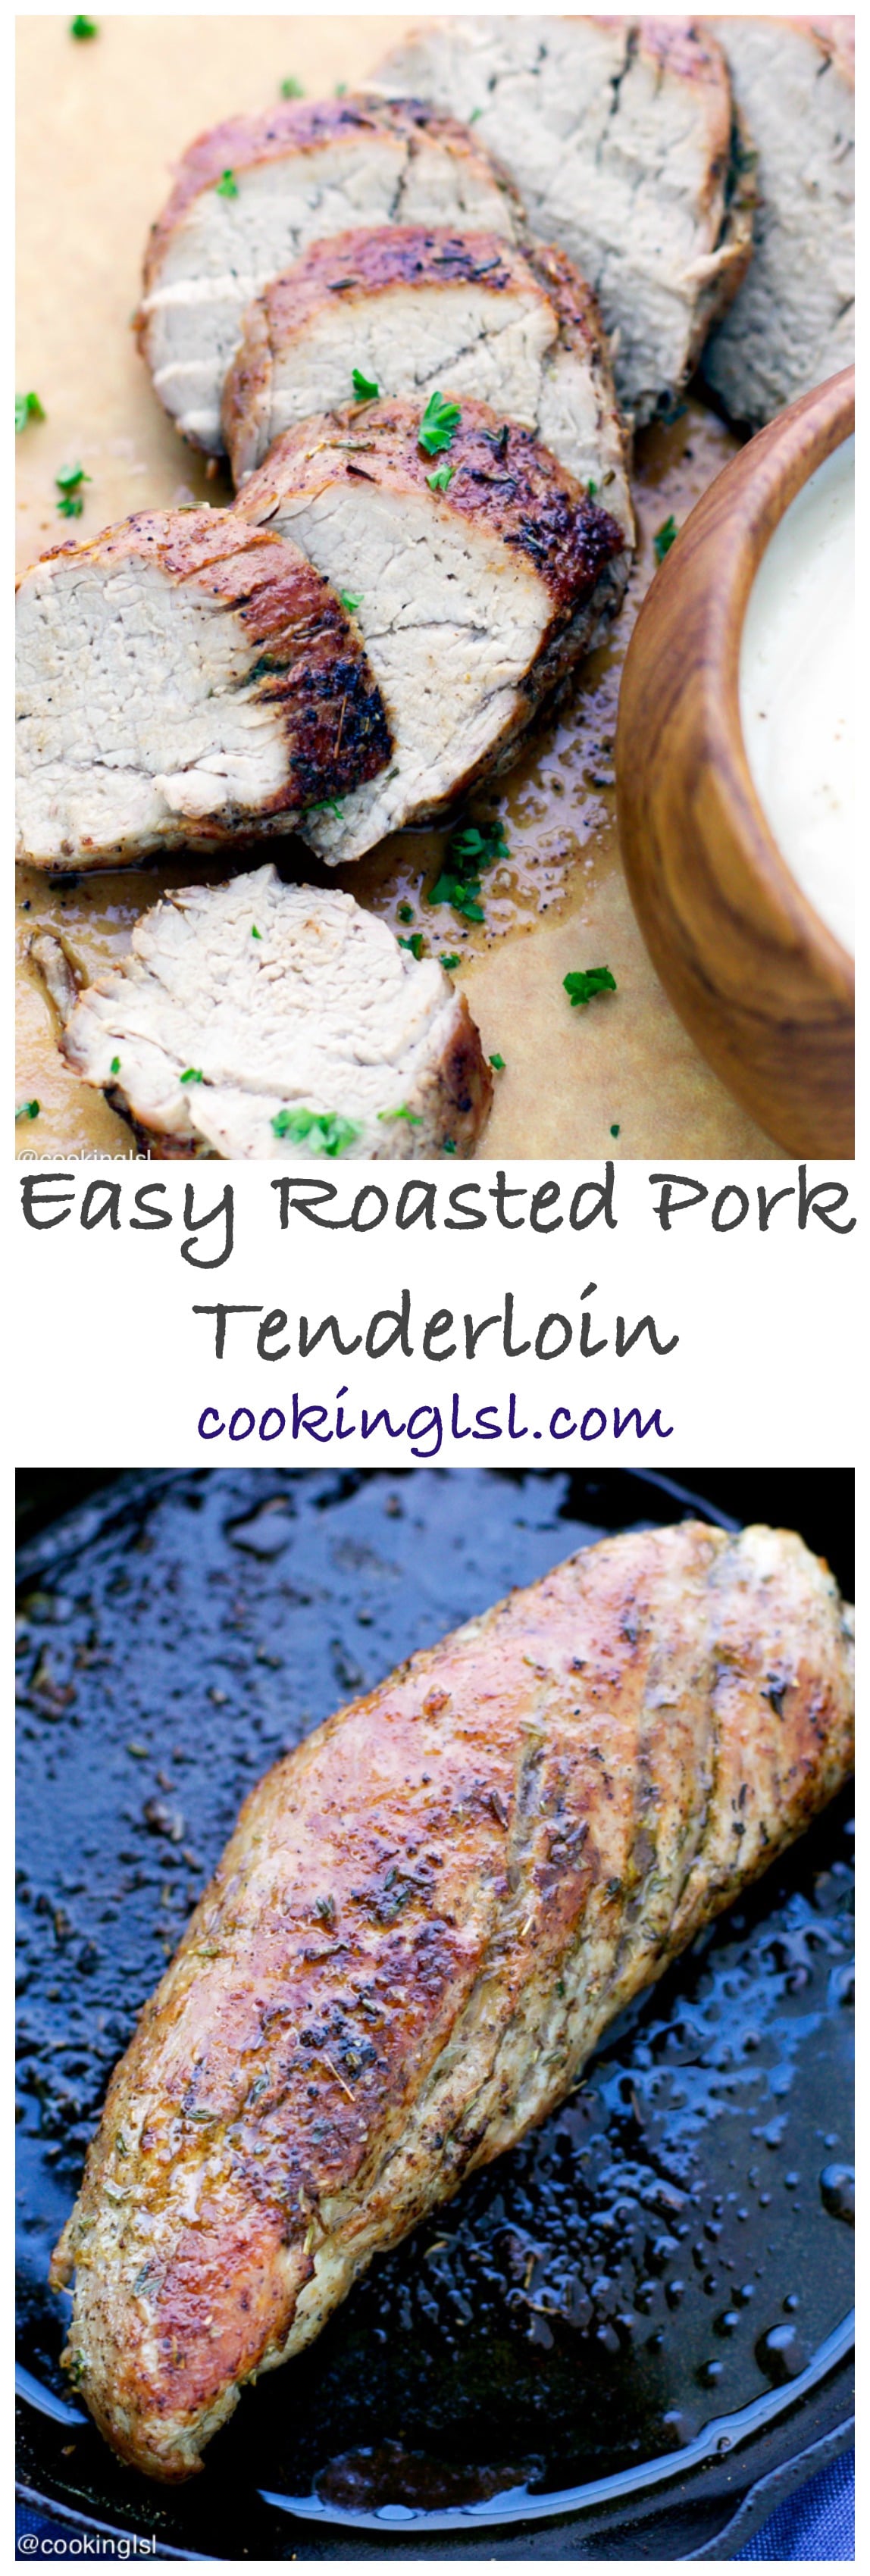 Easy-Roasted-Pork-Tenderloin